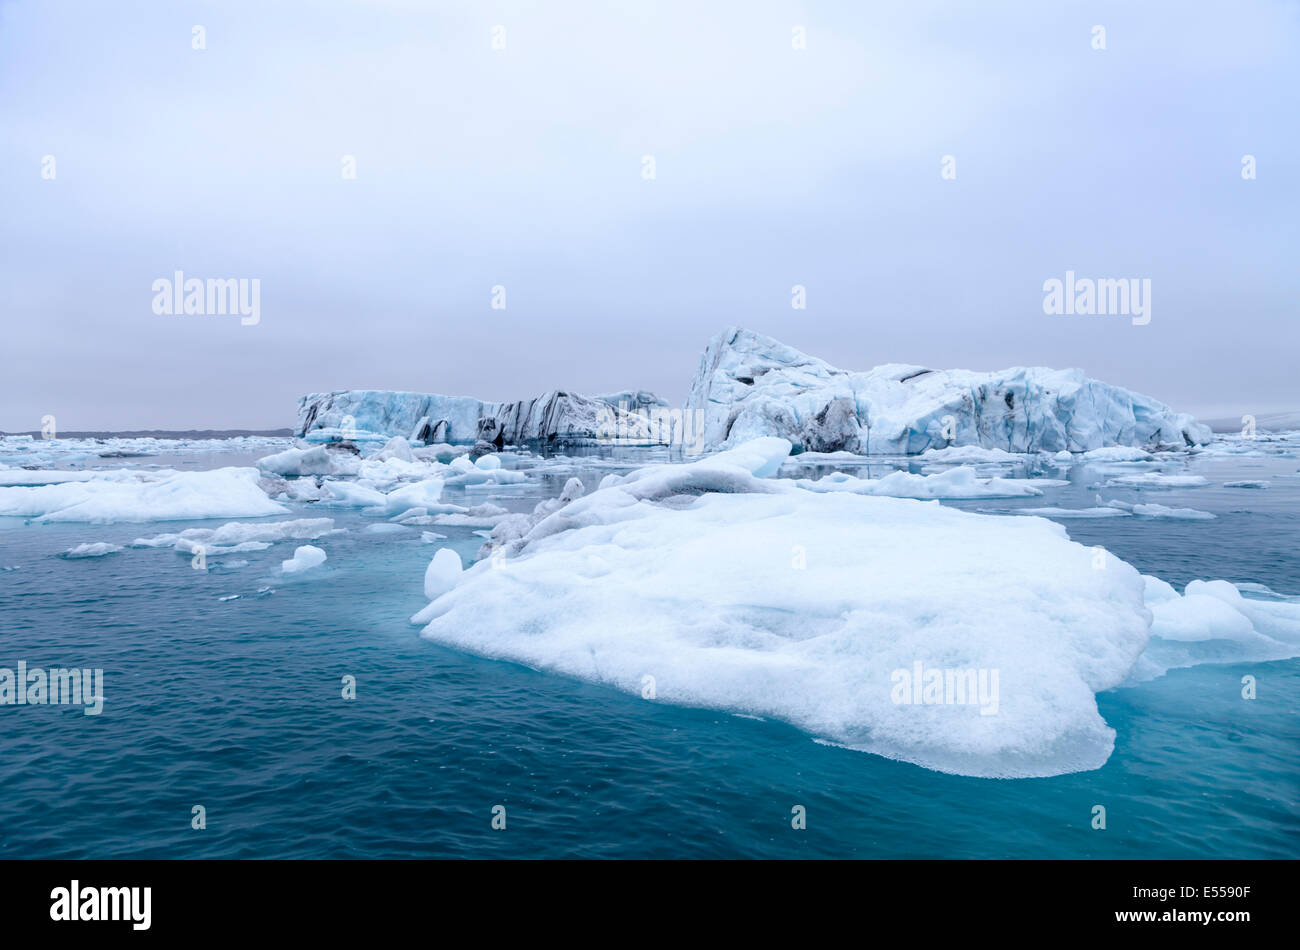 Les glaces flottantes et des icebergs dans les eaux turquoise de la Lagune glaciaire du Jökulsárlón, Islande Banque D'Images